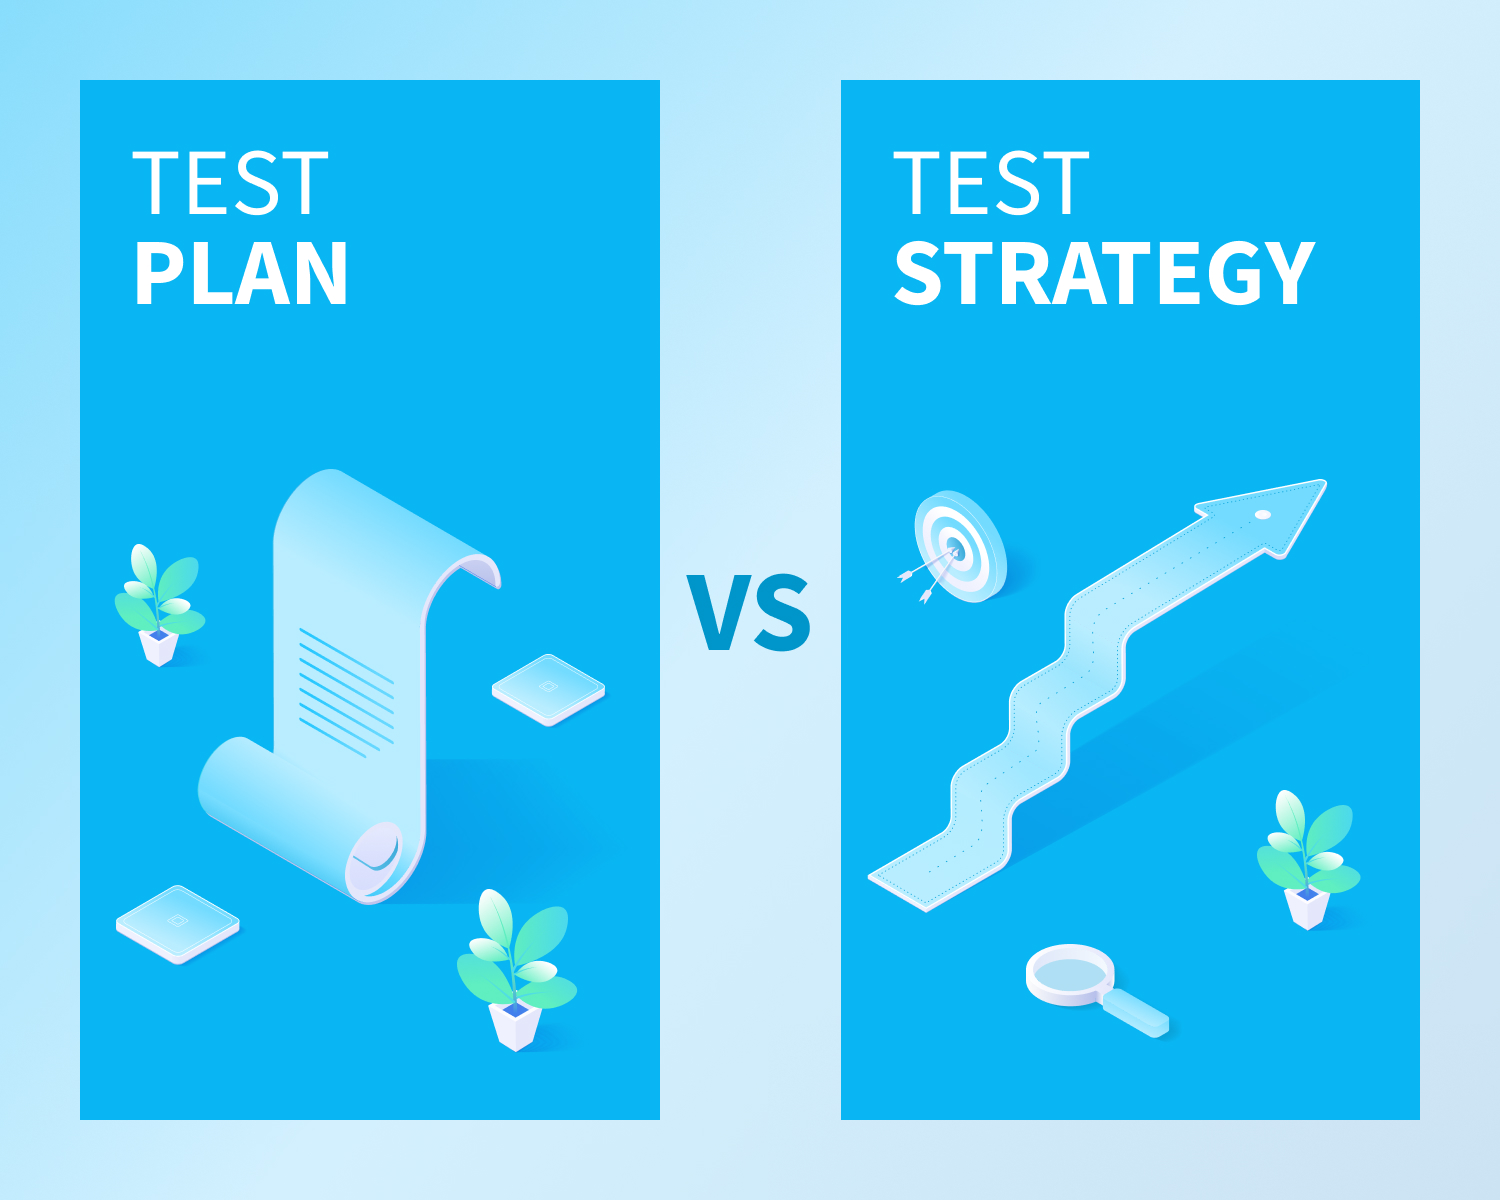 test plan vs test strategy